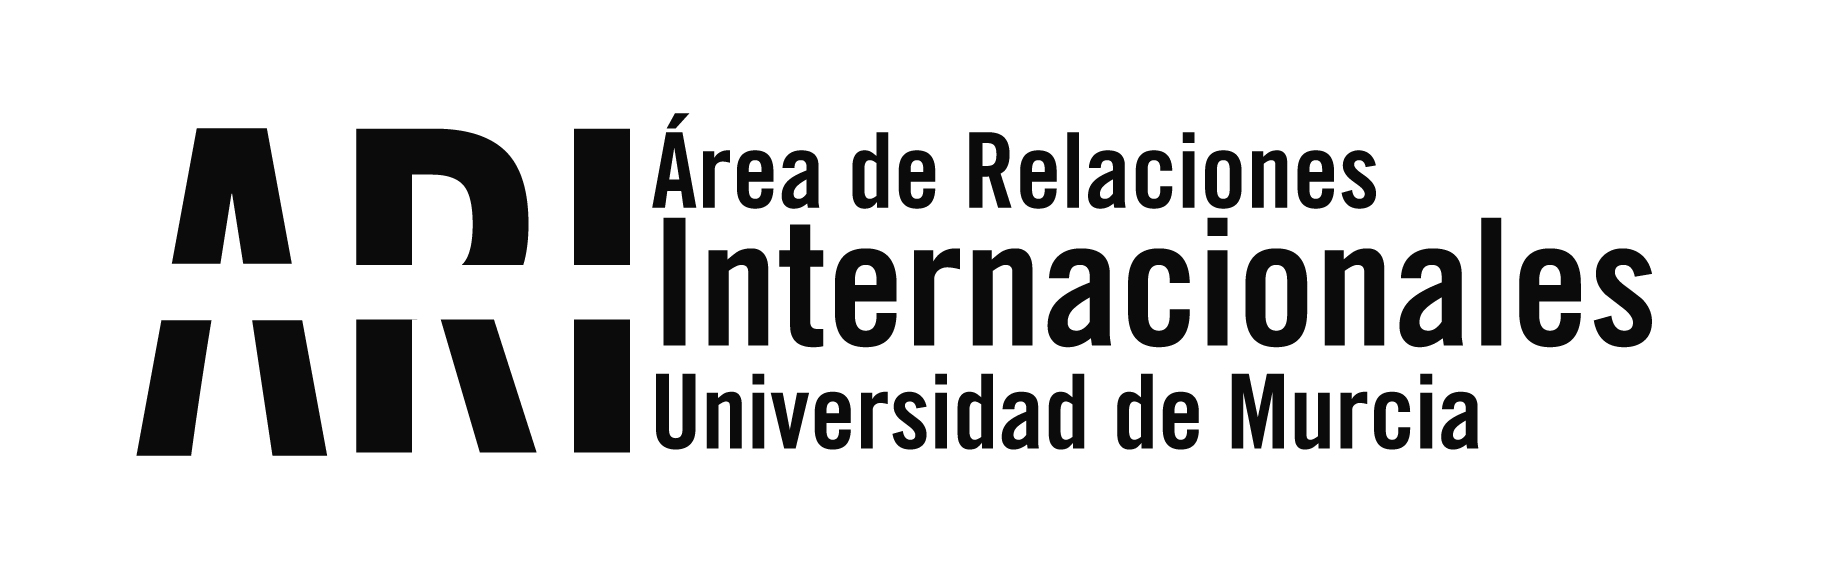 La UMU participa en la Jornada y Pleno de CRUE-Internacionalización y Cooperación - Área de Relaciones Internacionales